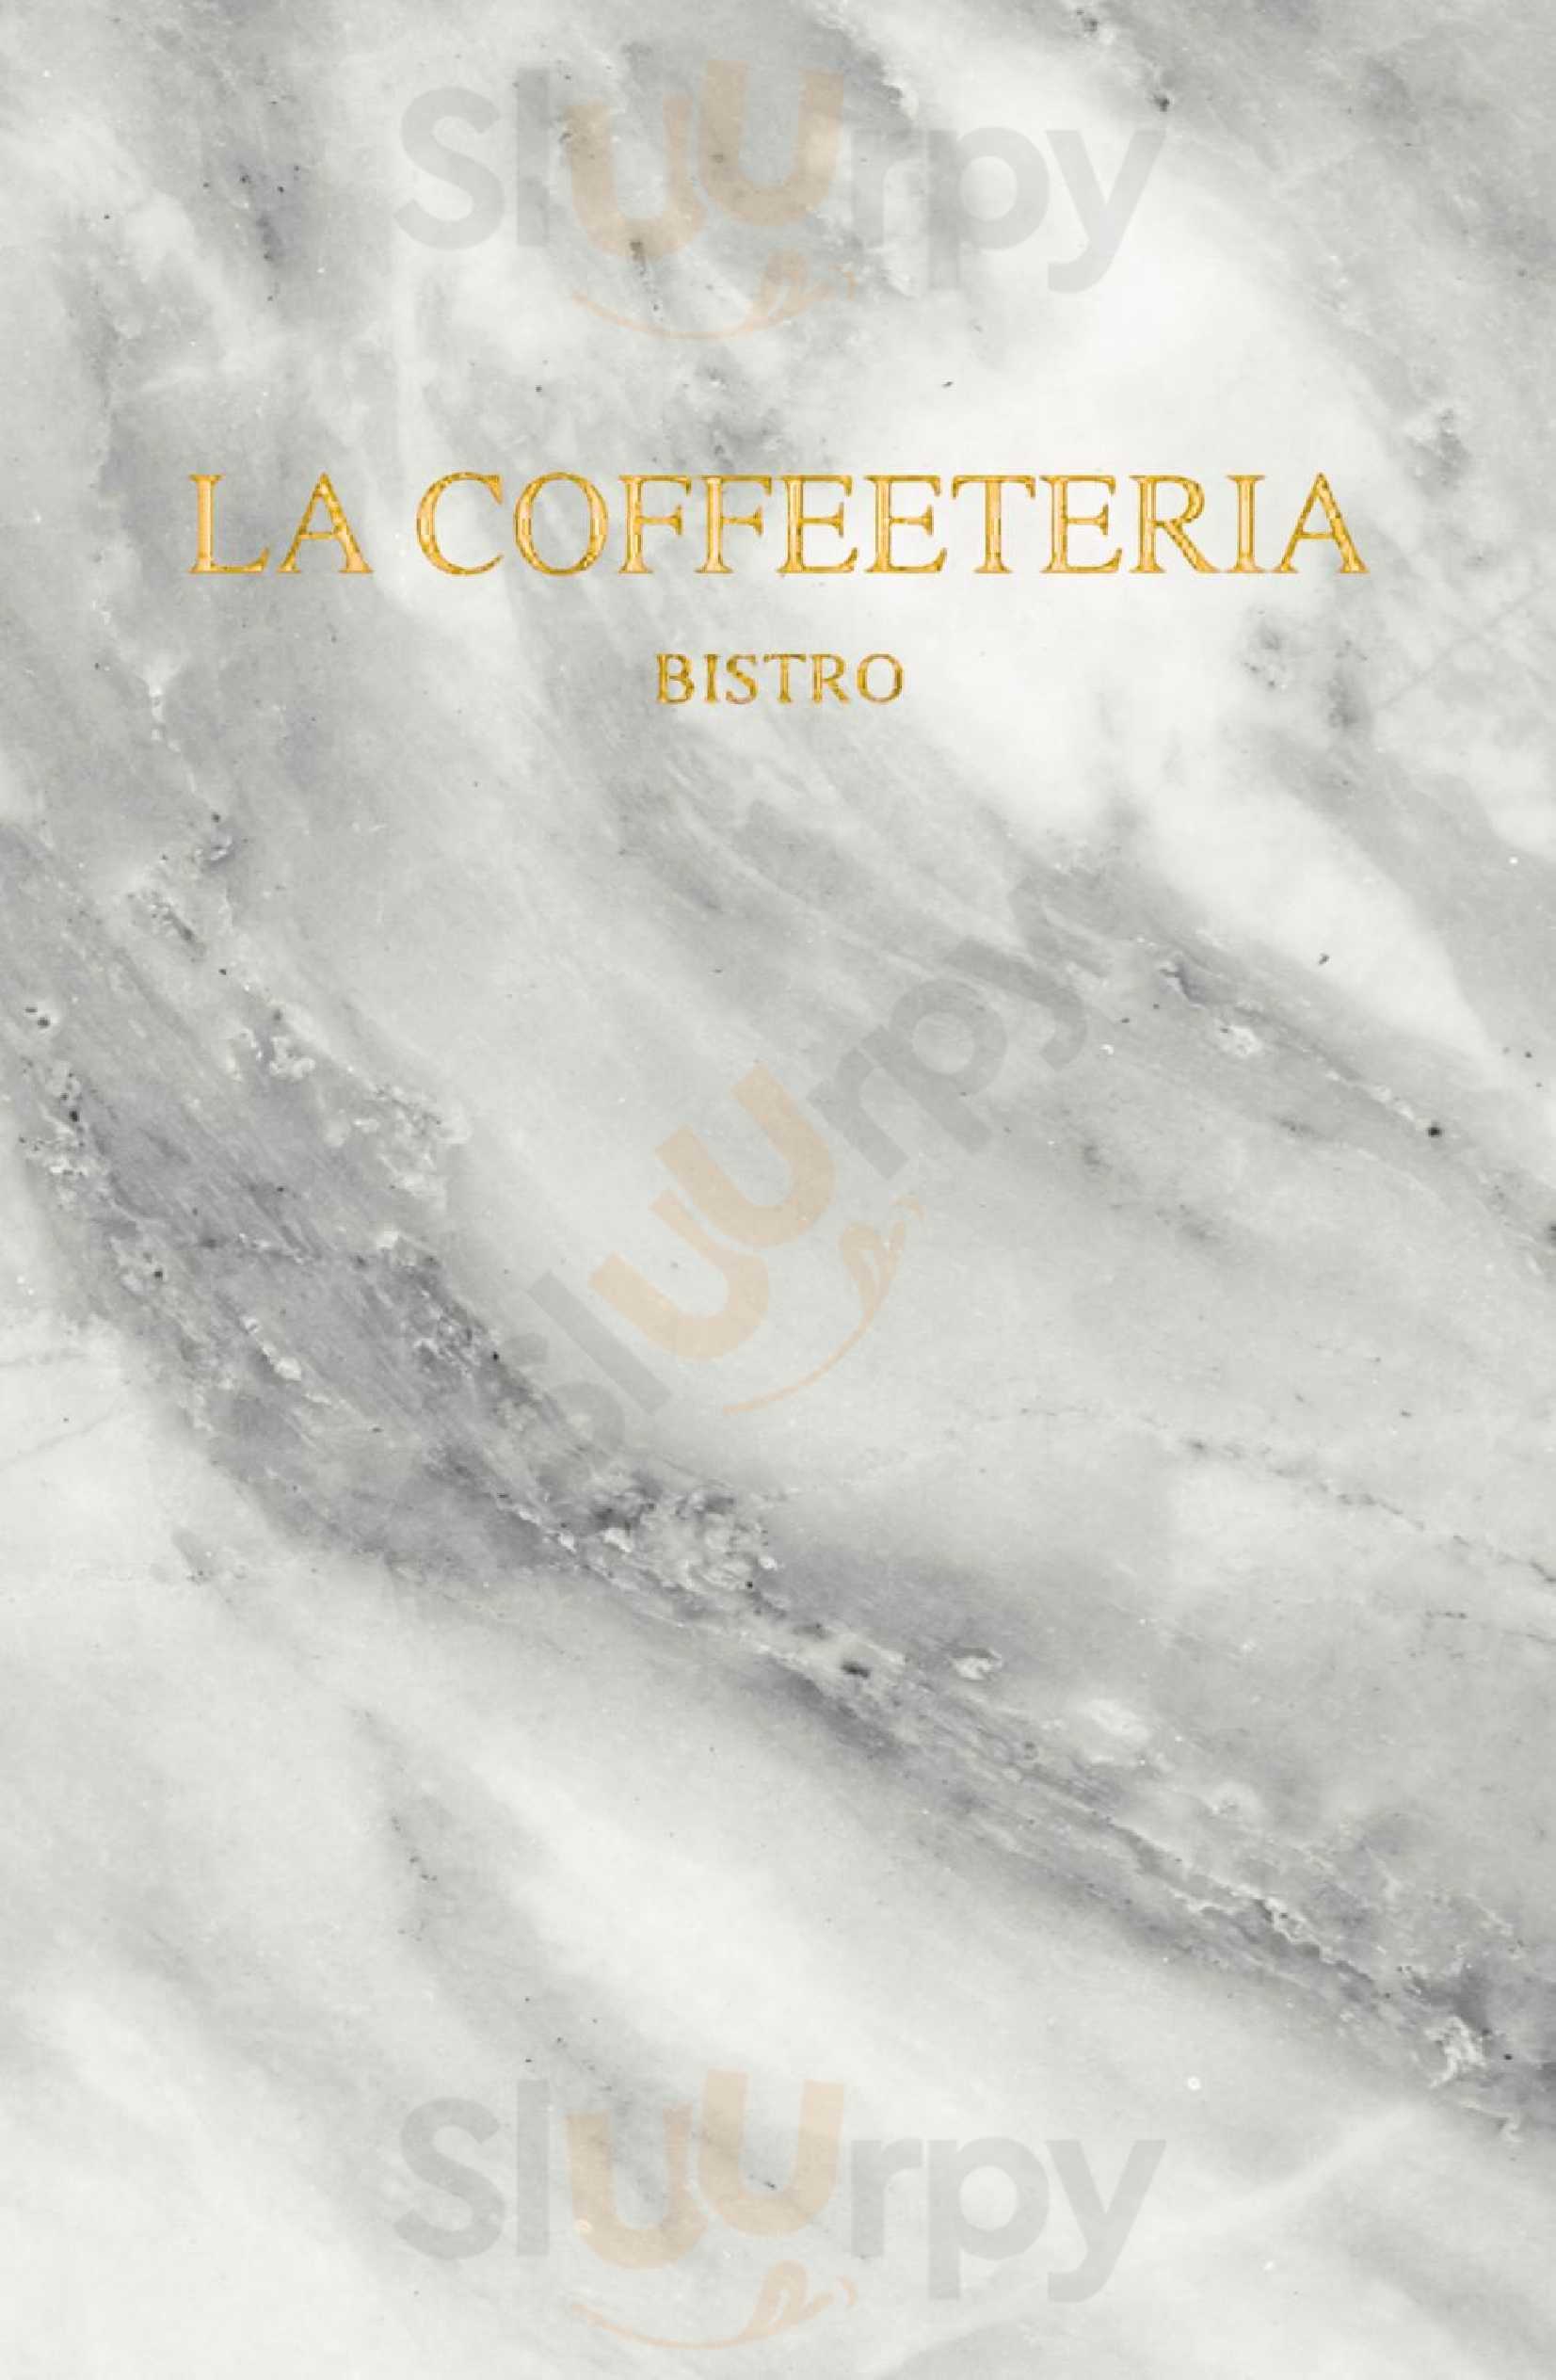 La Coffeeteria Bistro León Menu - 1